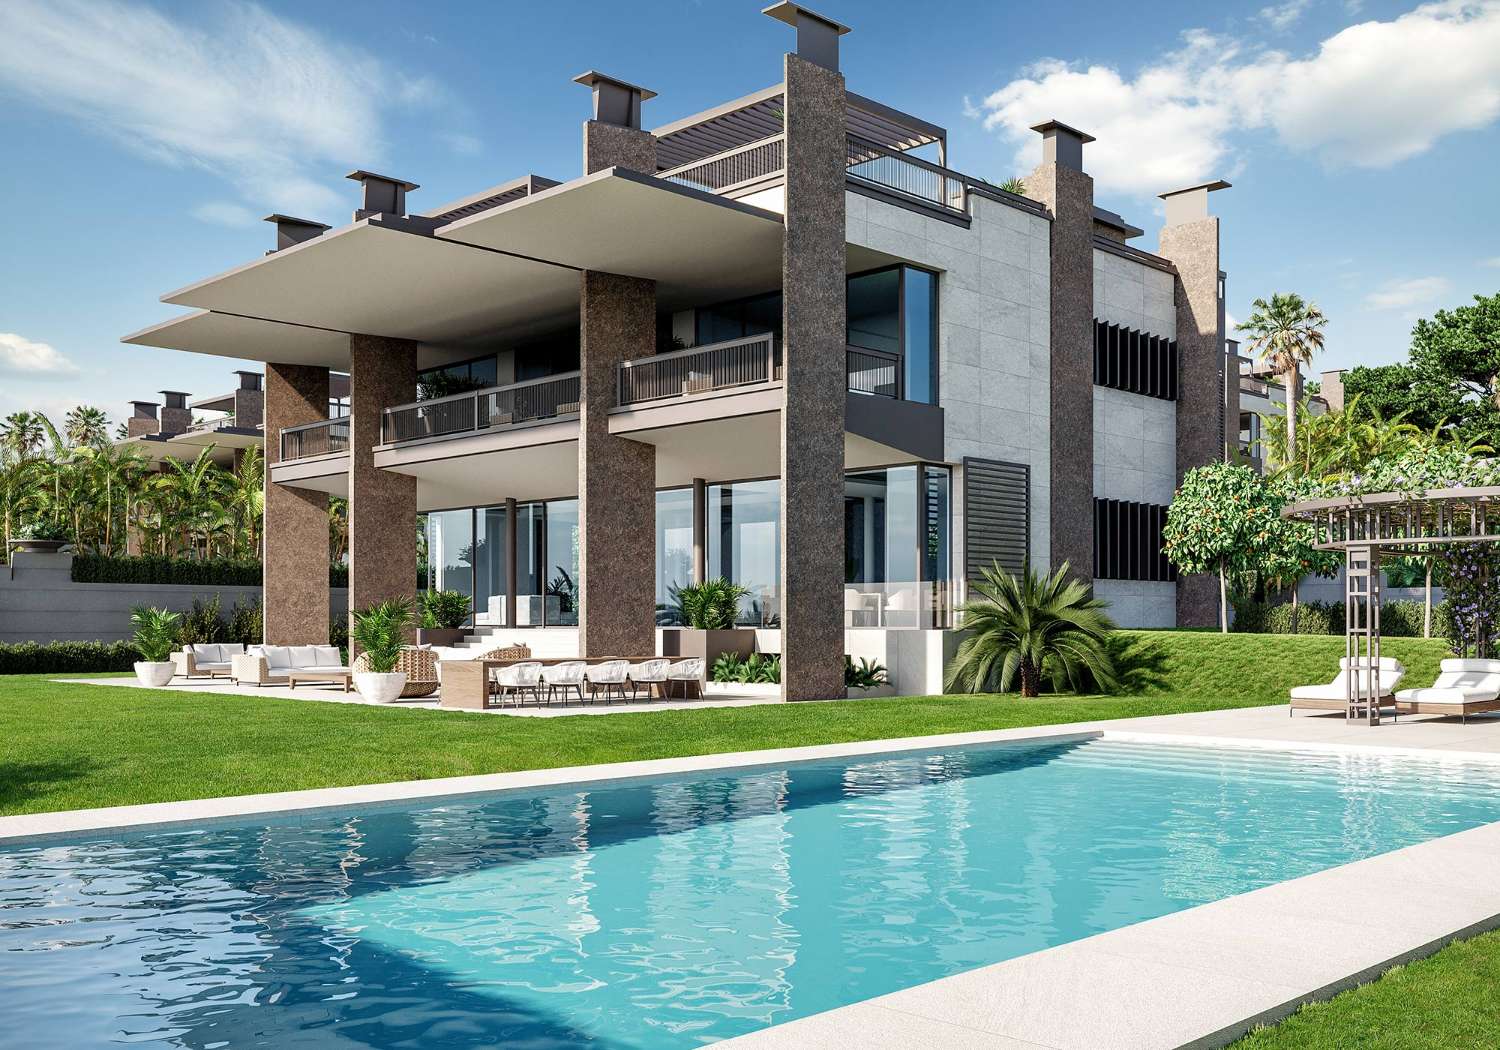 Exclusive luxury villas very close to Puerto Banús, Marbella!